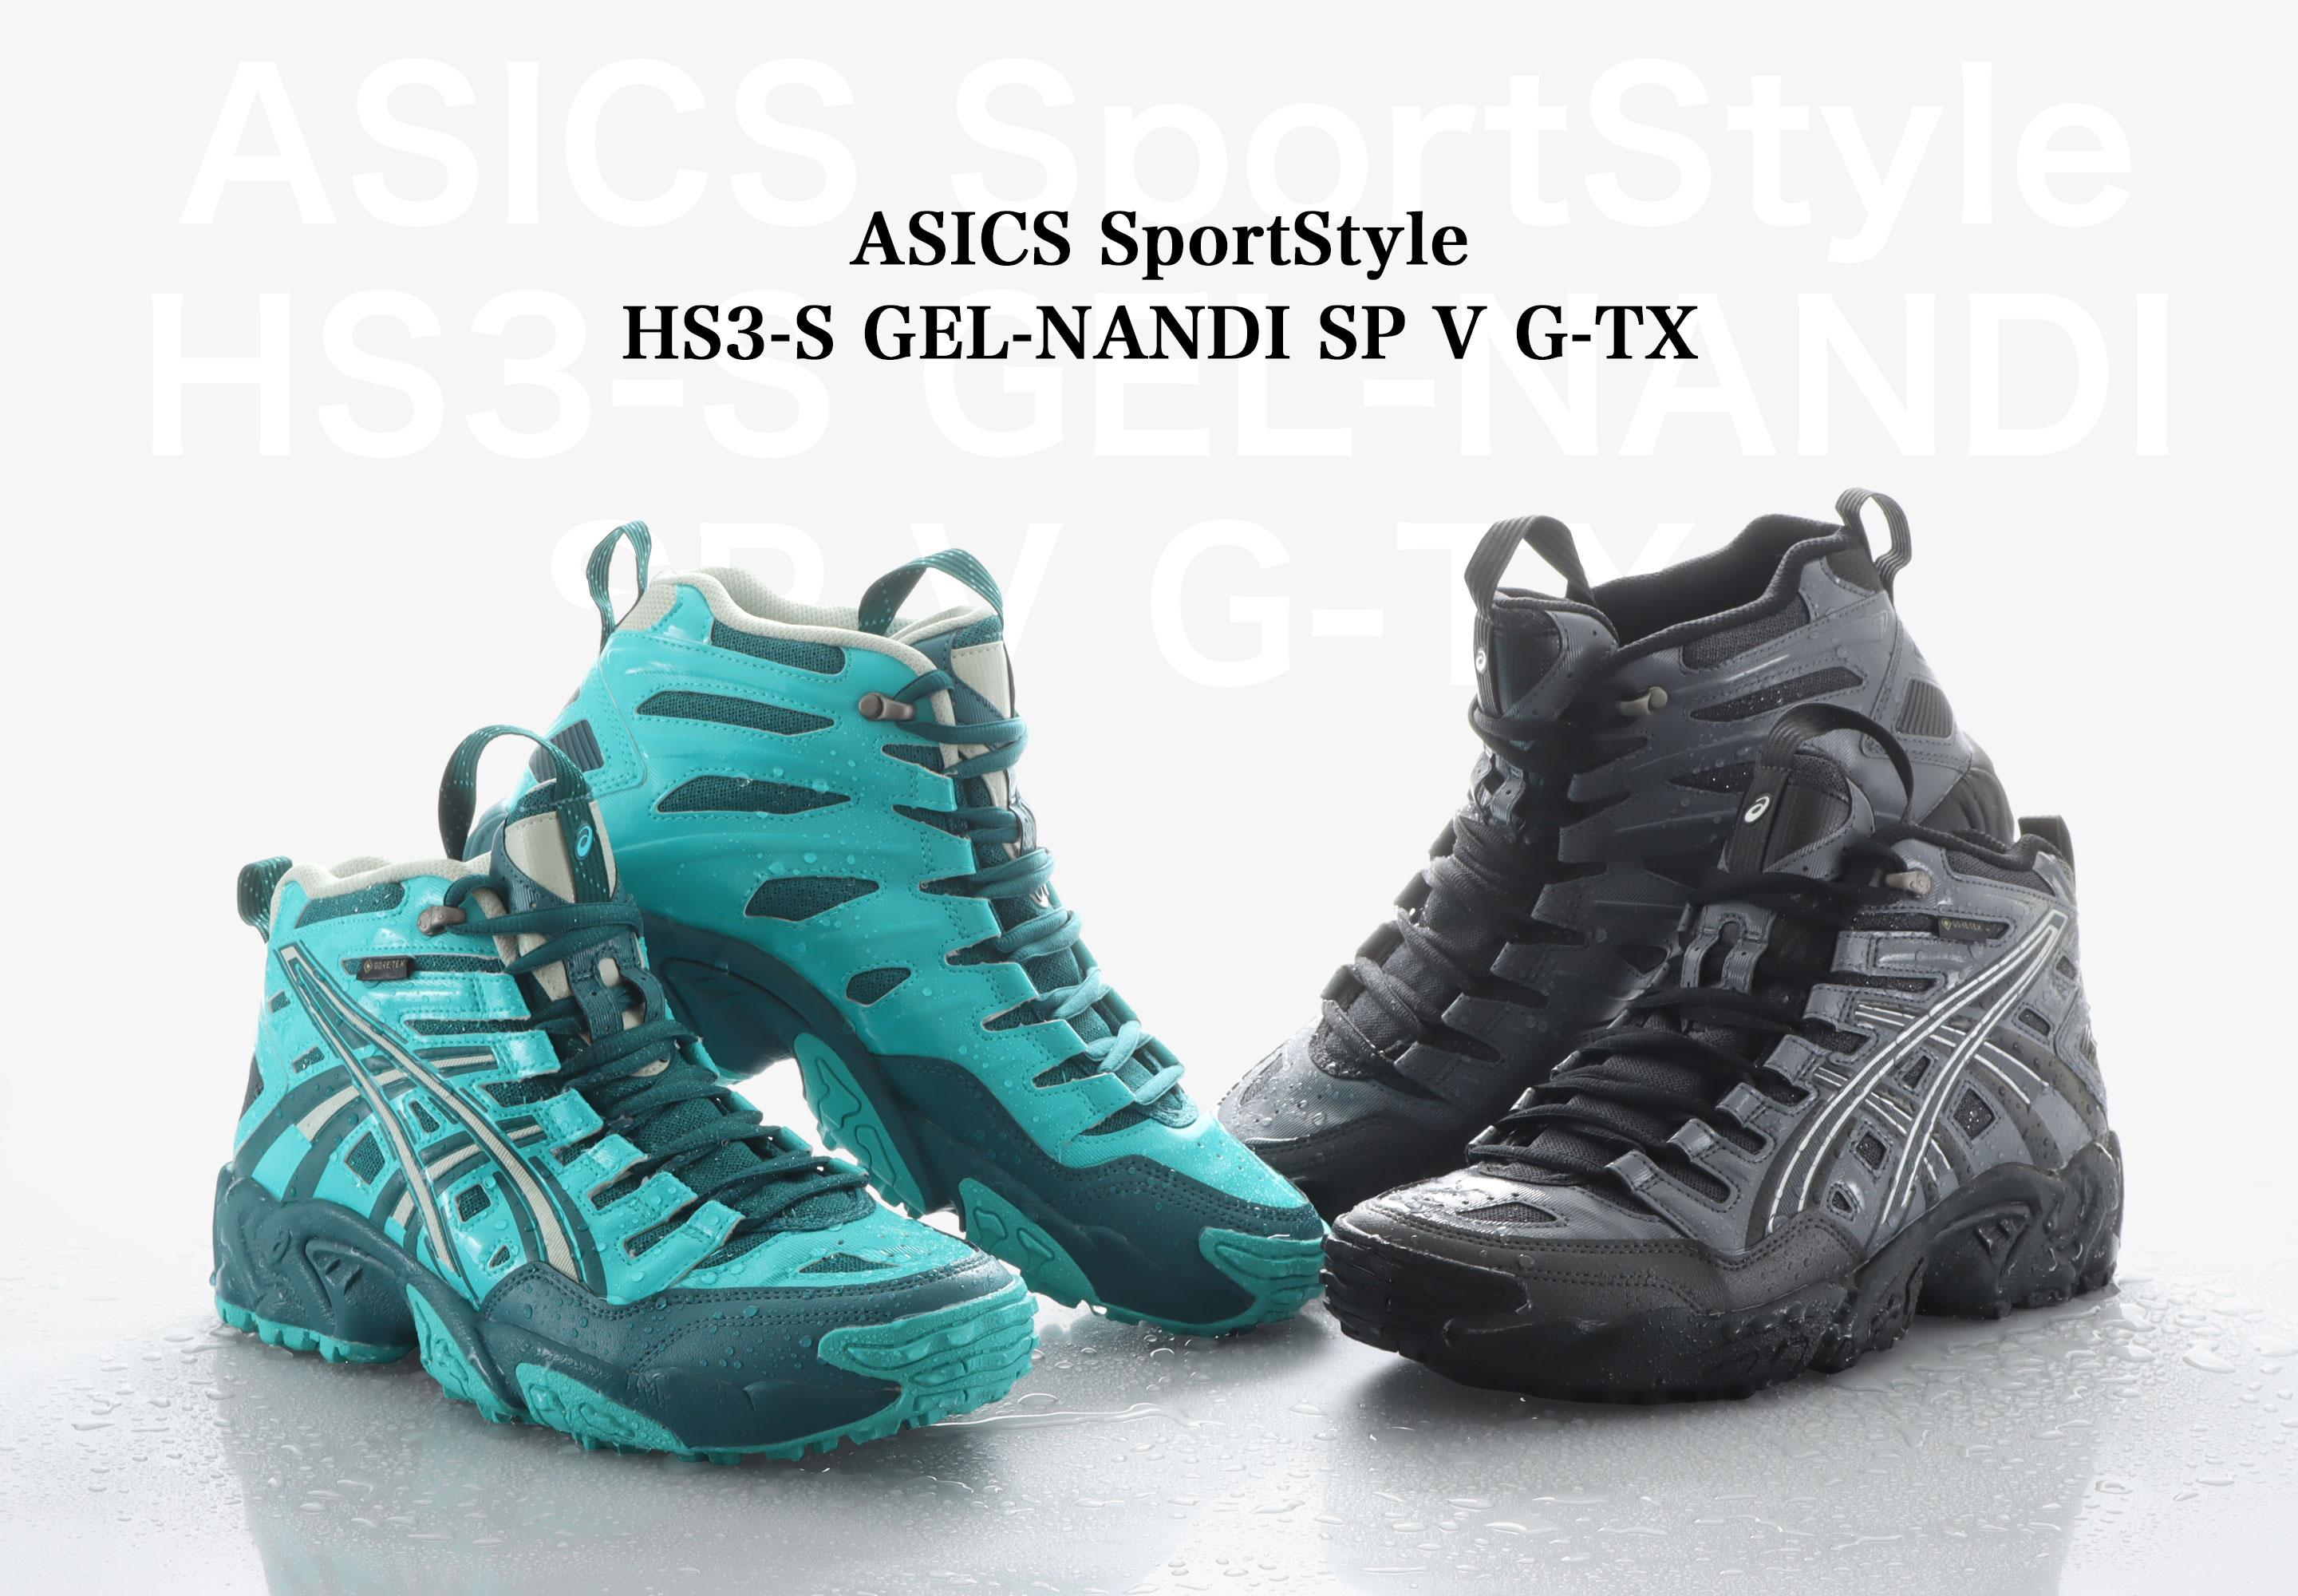 "ASICS SportStyle HS3-S GEL-NANDI SP V G-TX"